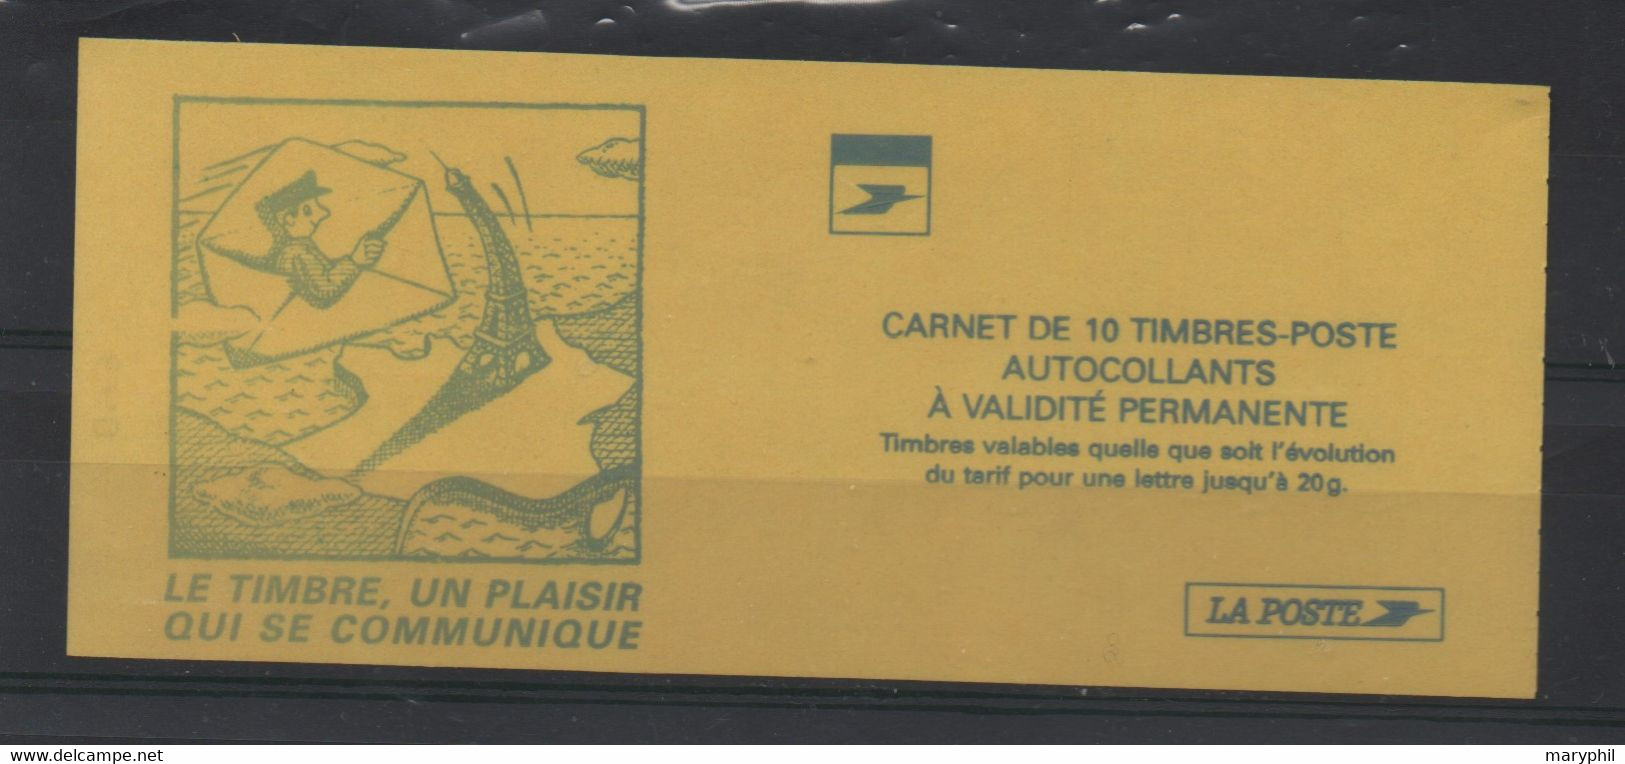 LOT 441- FRANCE CARNET N° 3085-  C3f  - TYPE I  - BANDE DE PHOSPHORE DECALEE   - Cote 75,00€ - Carnets